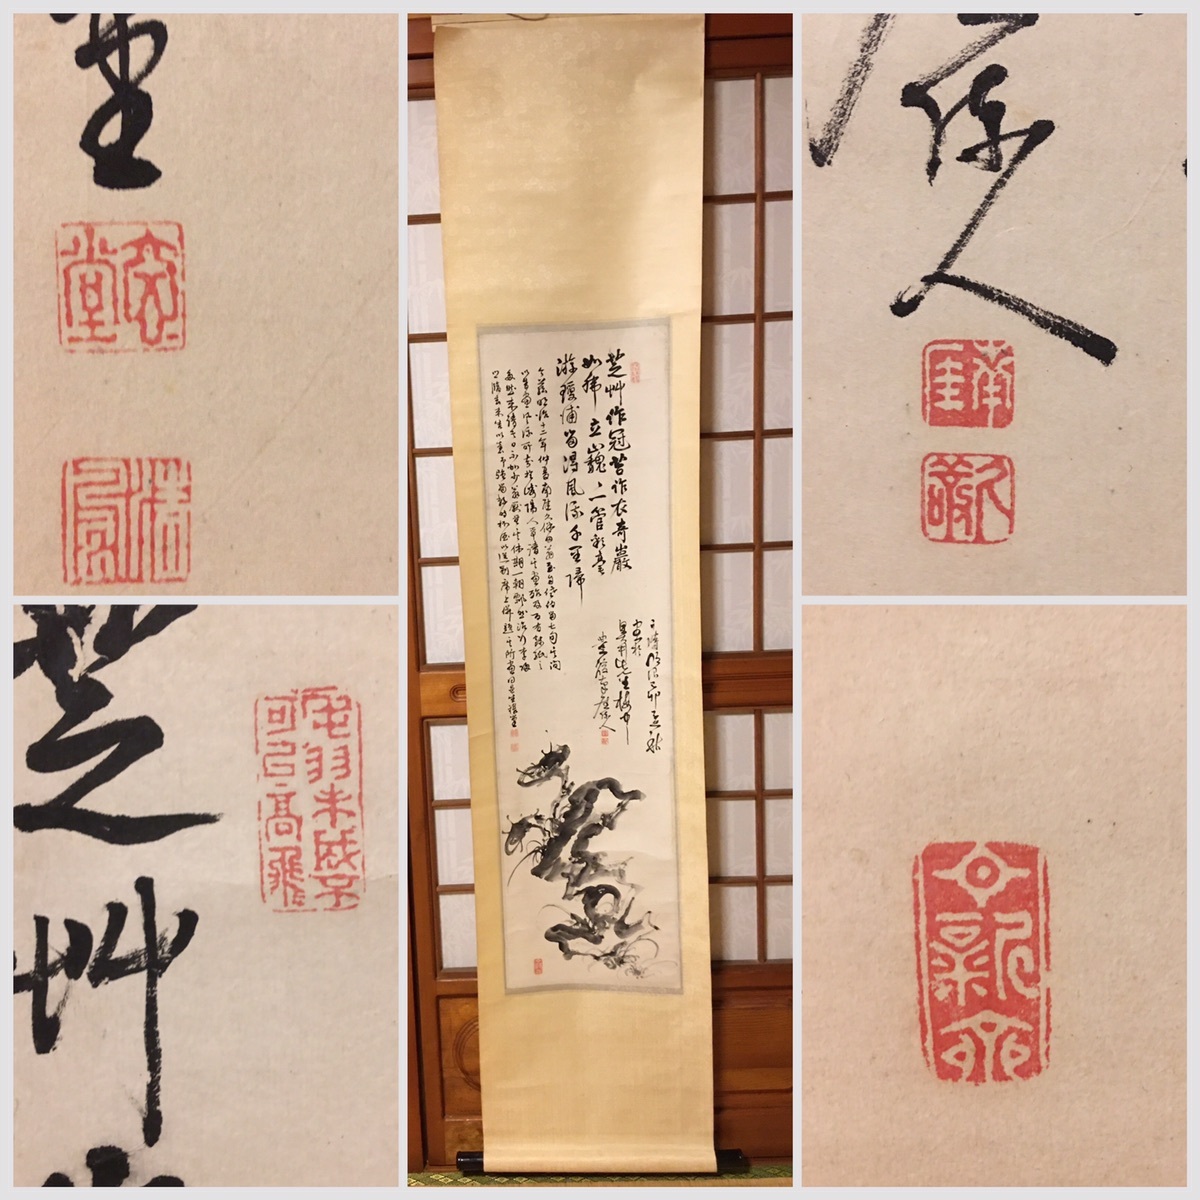 पहाड़ का पत्थर रीशी चीनी और जापानी प्राचीन कला लटकता हुआ स्क्रॉल लटकता हुआ स्क्रॉल सुलेख पेंटिंग, कलाकृति, किताब, लटका हुआ स्क्रॉल